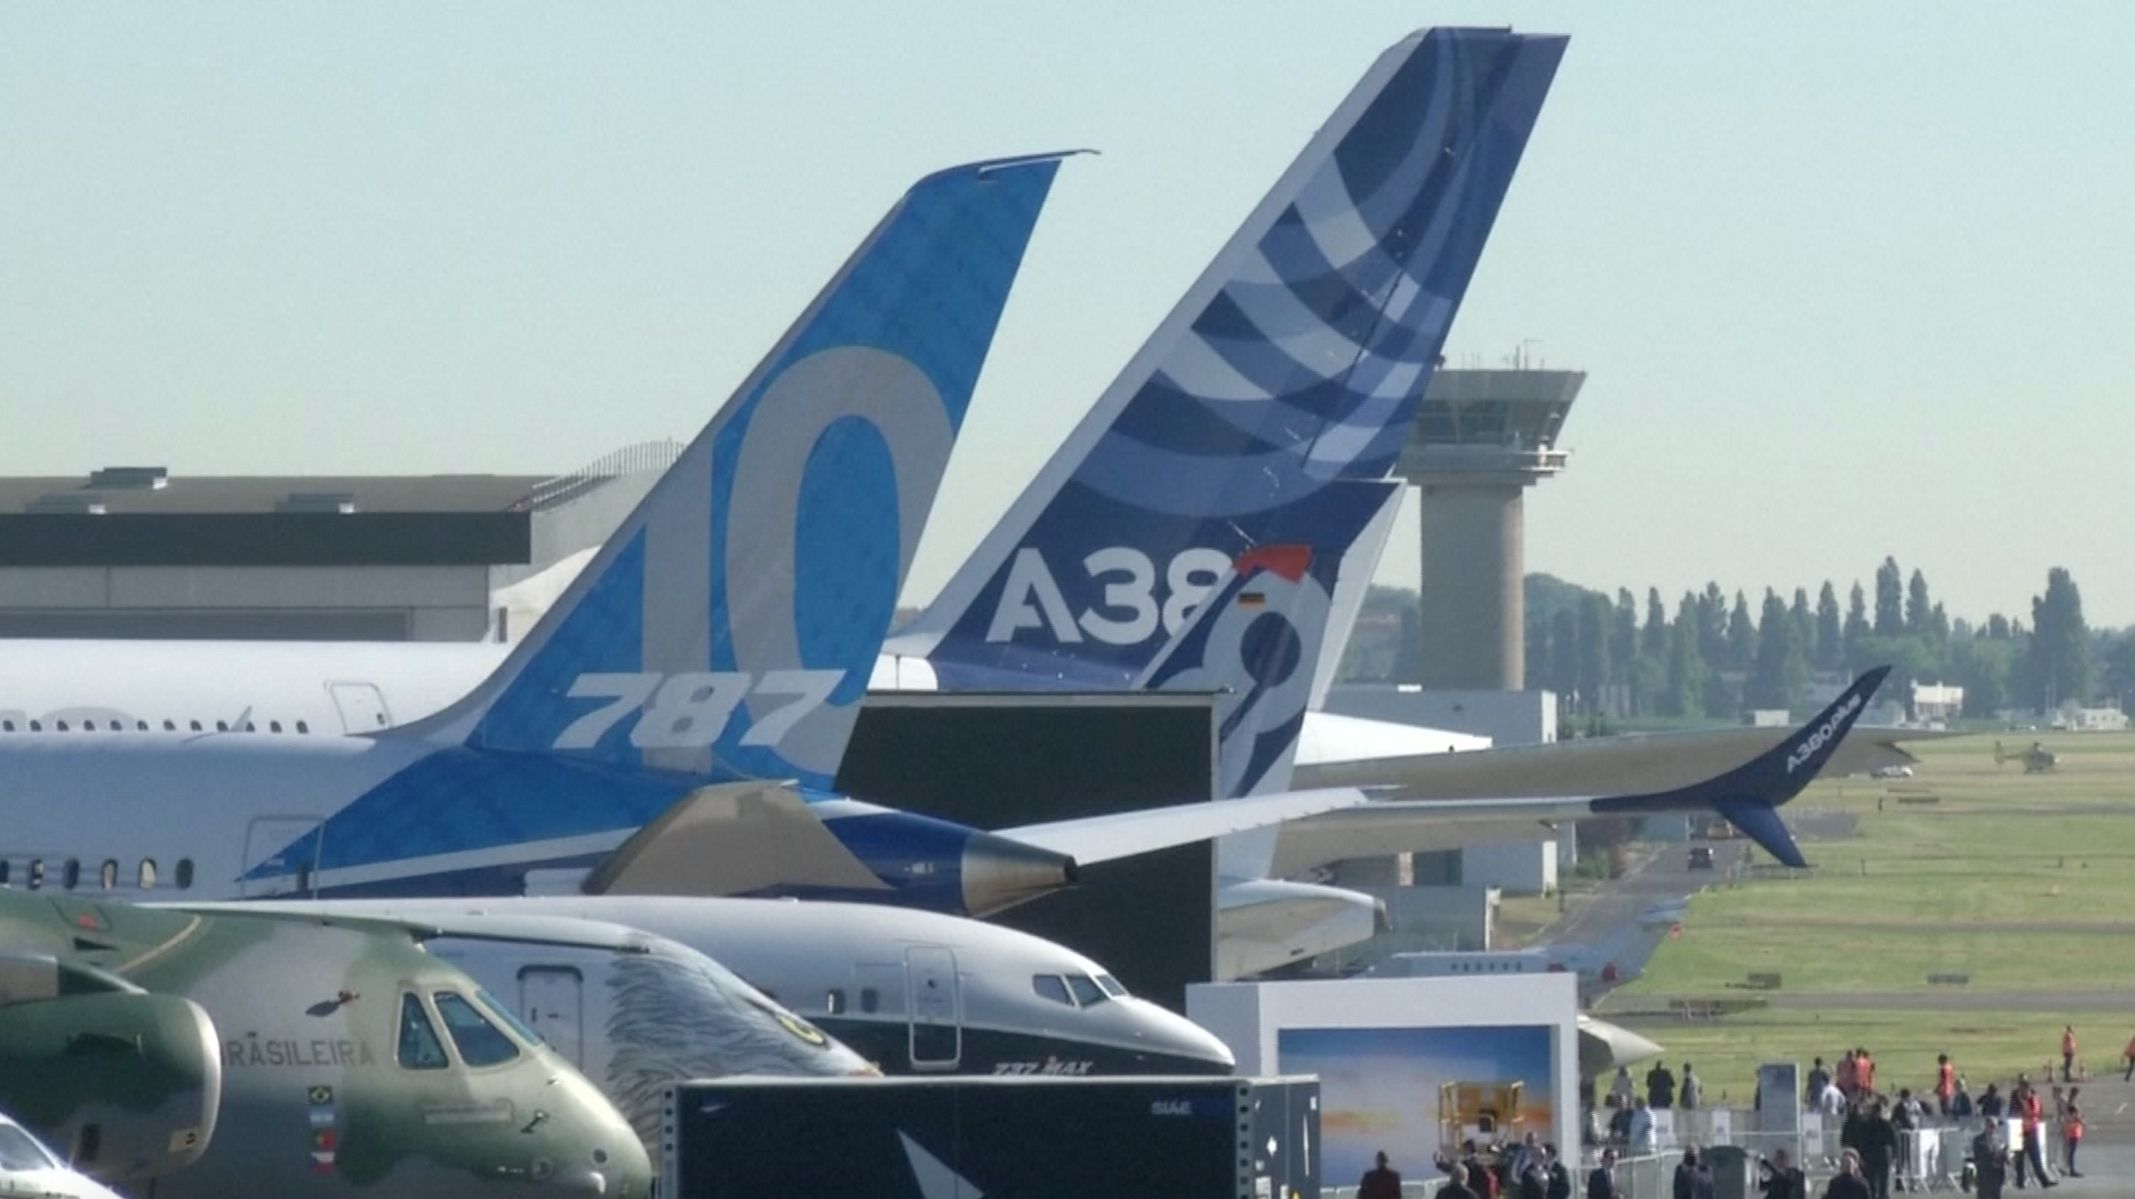 Pařížský aerosalon představil letecké novinky. Výrobci Boeing i Airbus akci zahájili velkými zakázkami